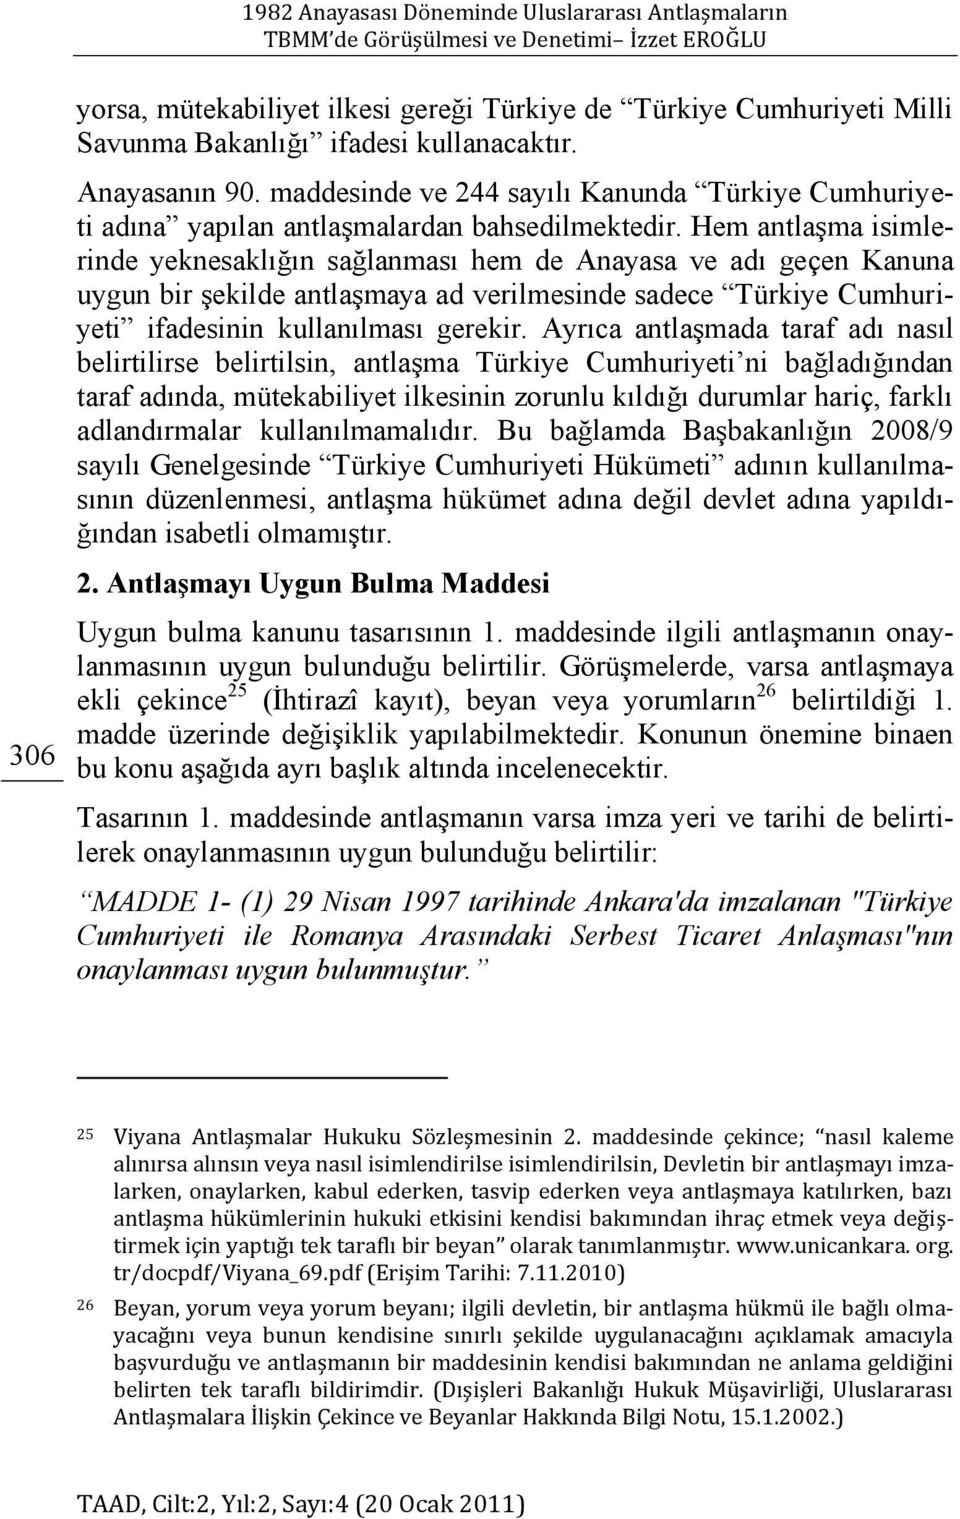 Hem antlaģma isimlerinde yeknesaklığın sağlanması hem de Anayasa ve adı geçen Kanuna uygun bir Ģekilde antlaģmaya ad verilmesinde sadece Türkiye Cumhuriyeti ifadesinin kullanılması gerekir.